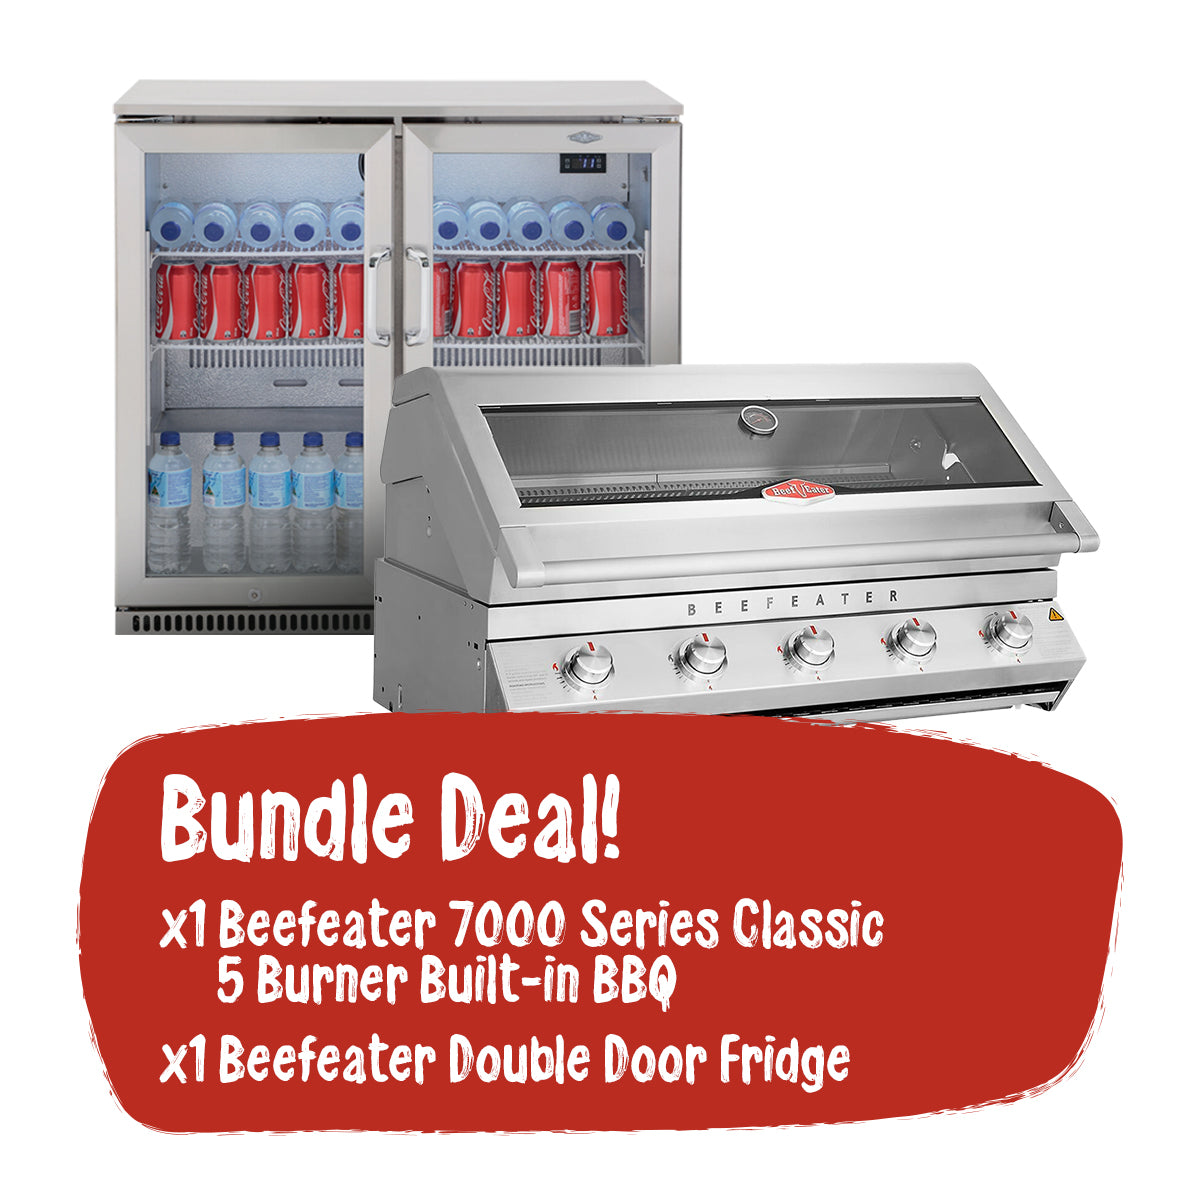 Beefeater 7000 Series Classic 5 Burner Built-in BBQ and Double Door Fridge Bundle